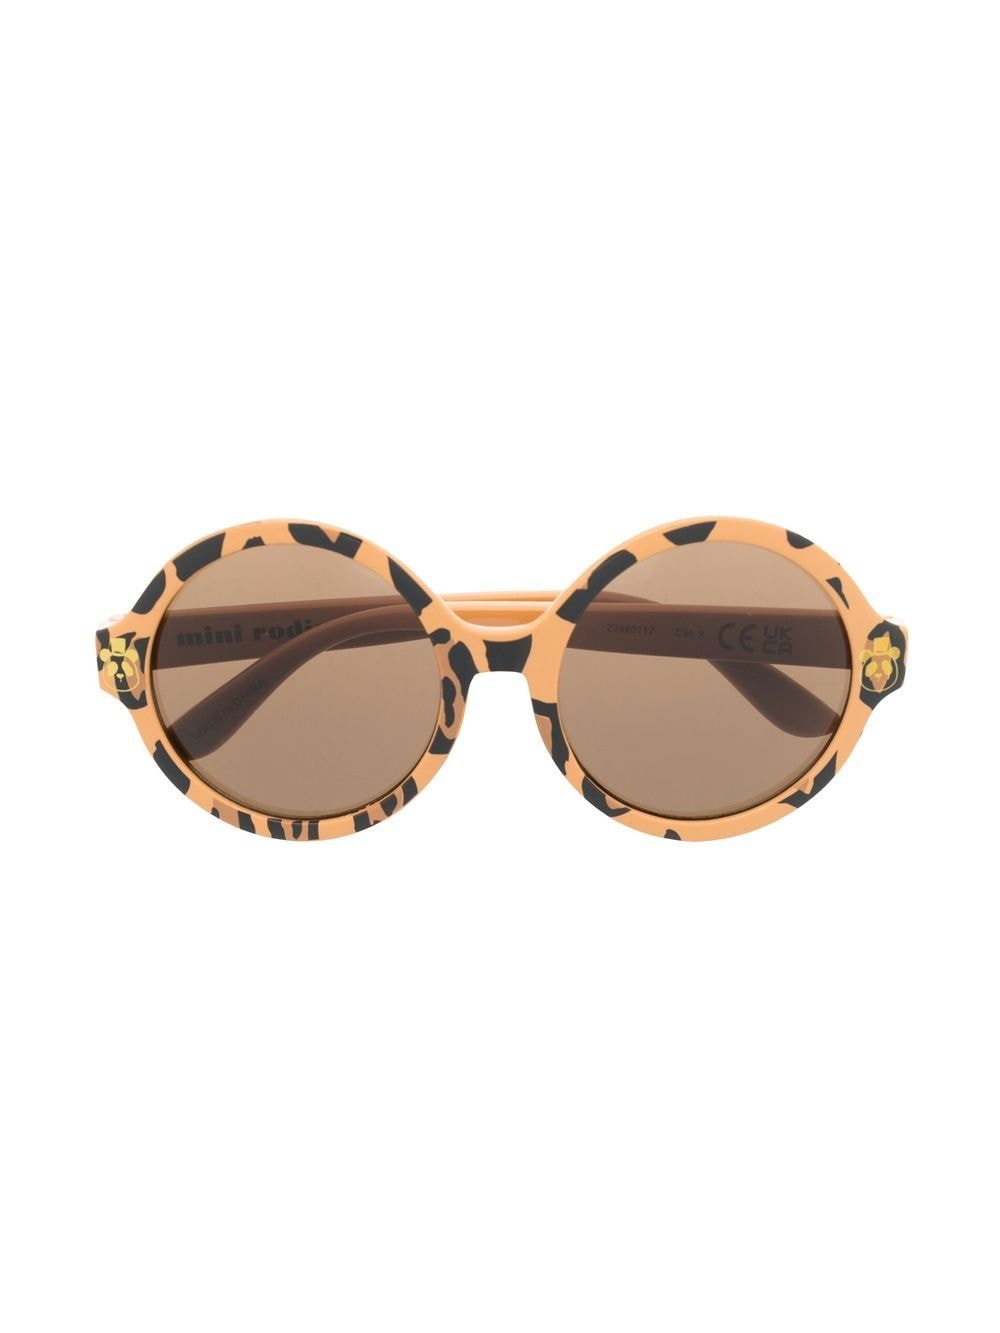 Mini Rodini leopard-print round-frame sunglasses - Neutrals von Mini Rodini